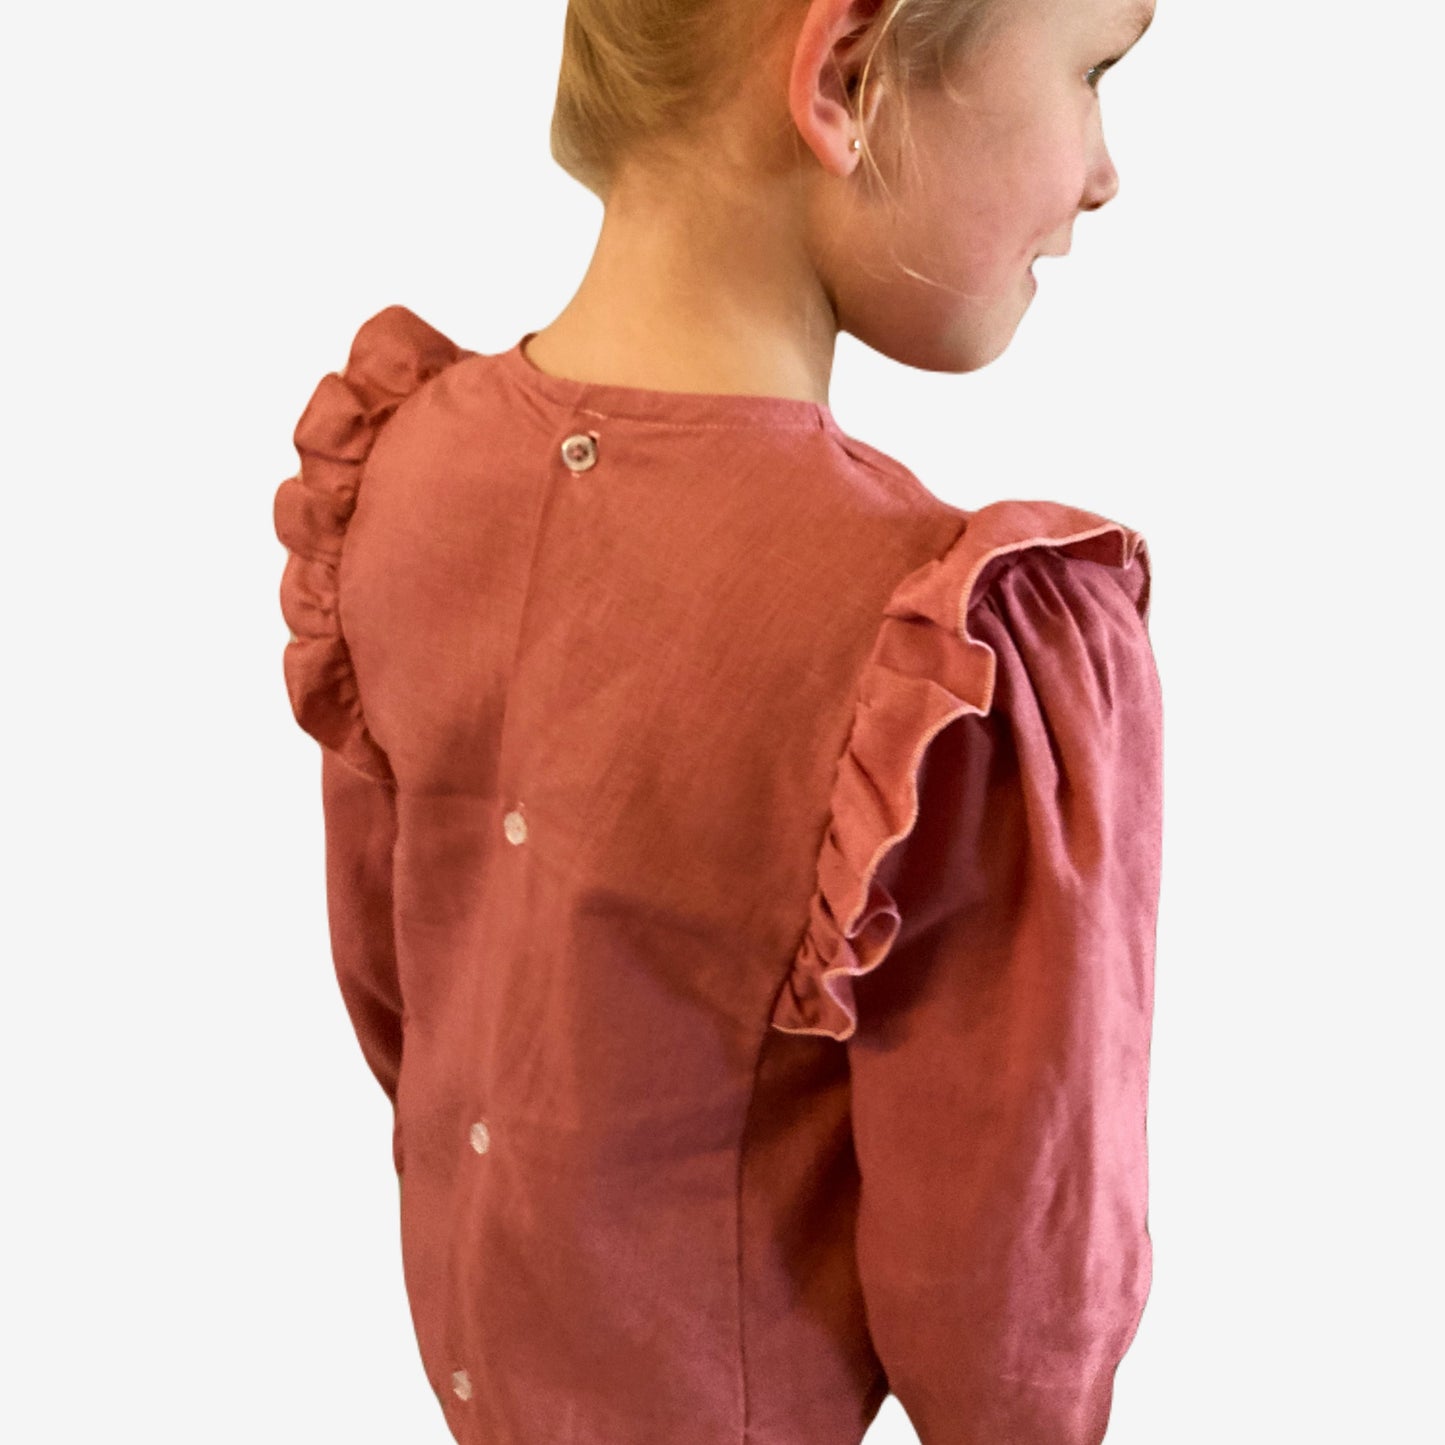 Achterkant van blouse Peach, onderdeel van Set Peach handgemaakte leuke duurzame meisjeskleding webshop Cuteez